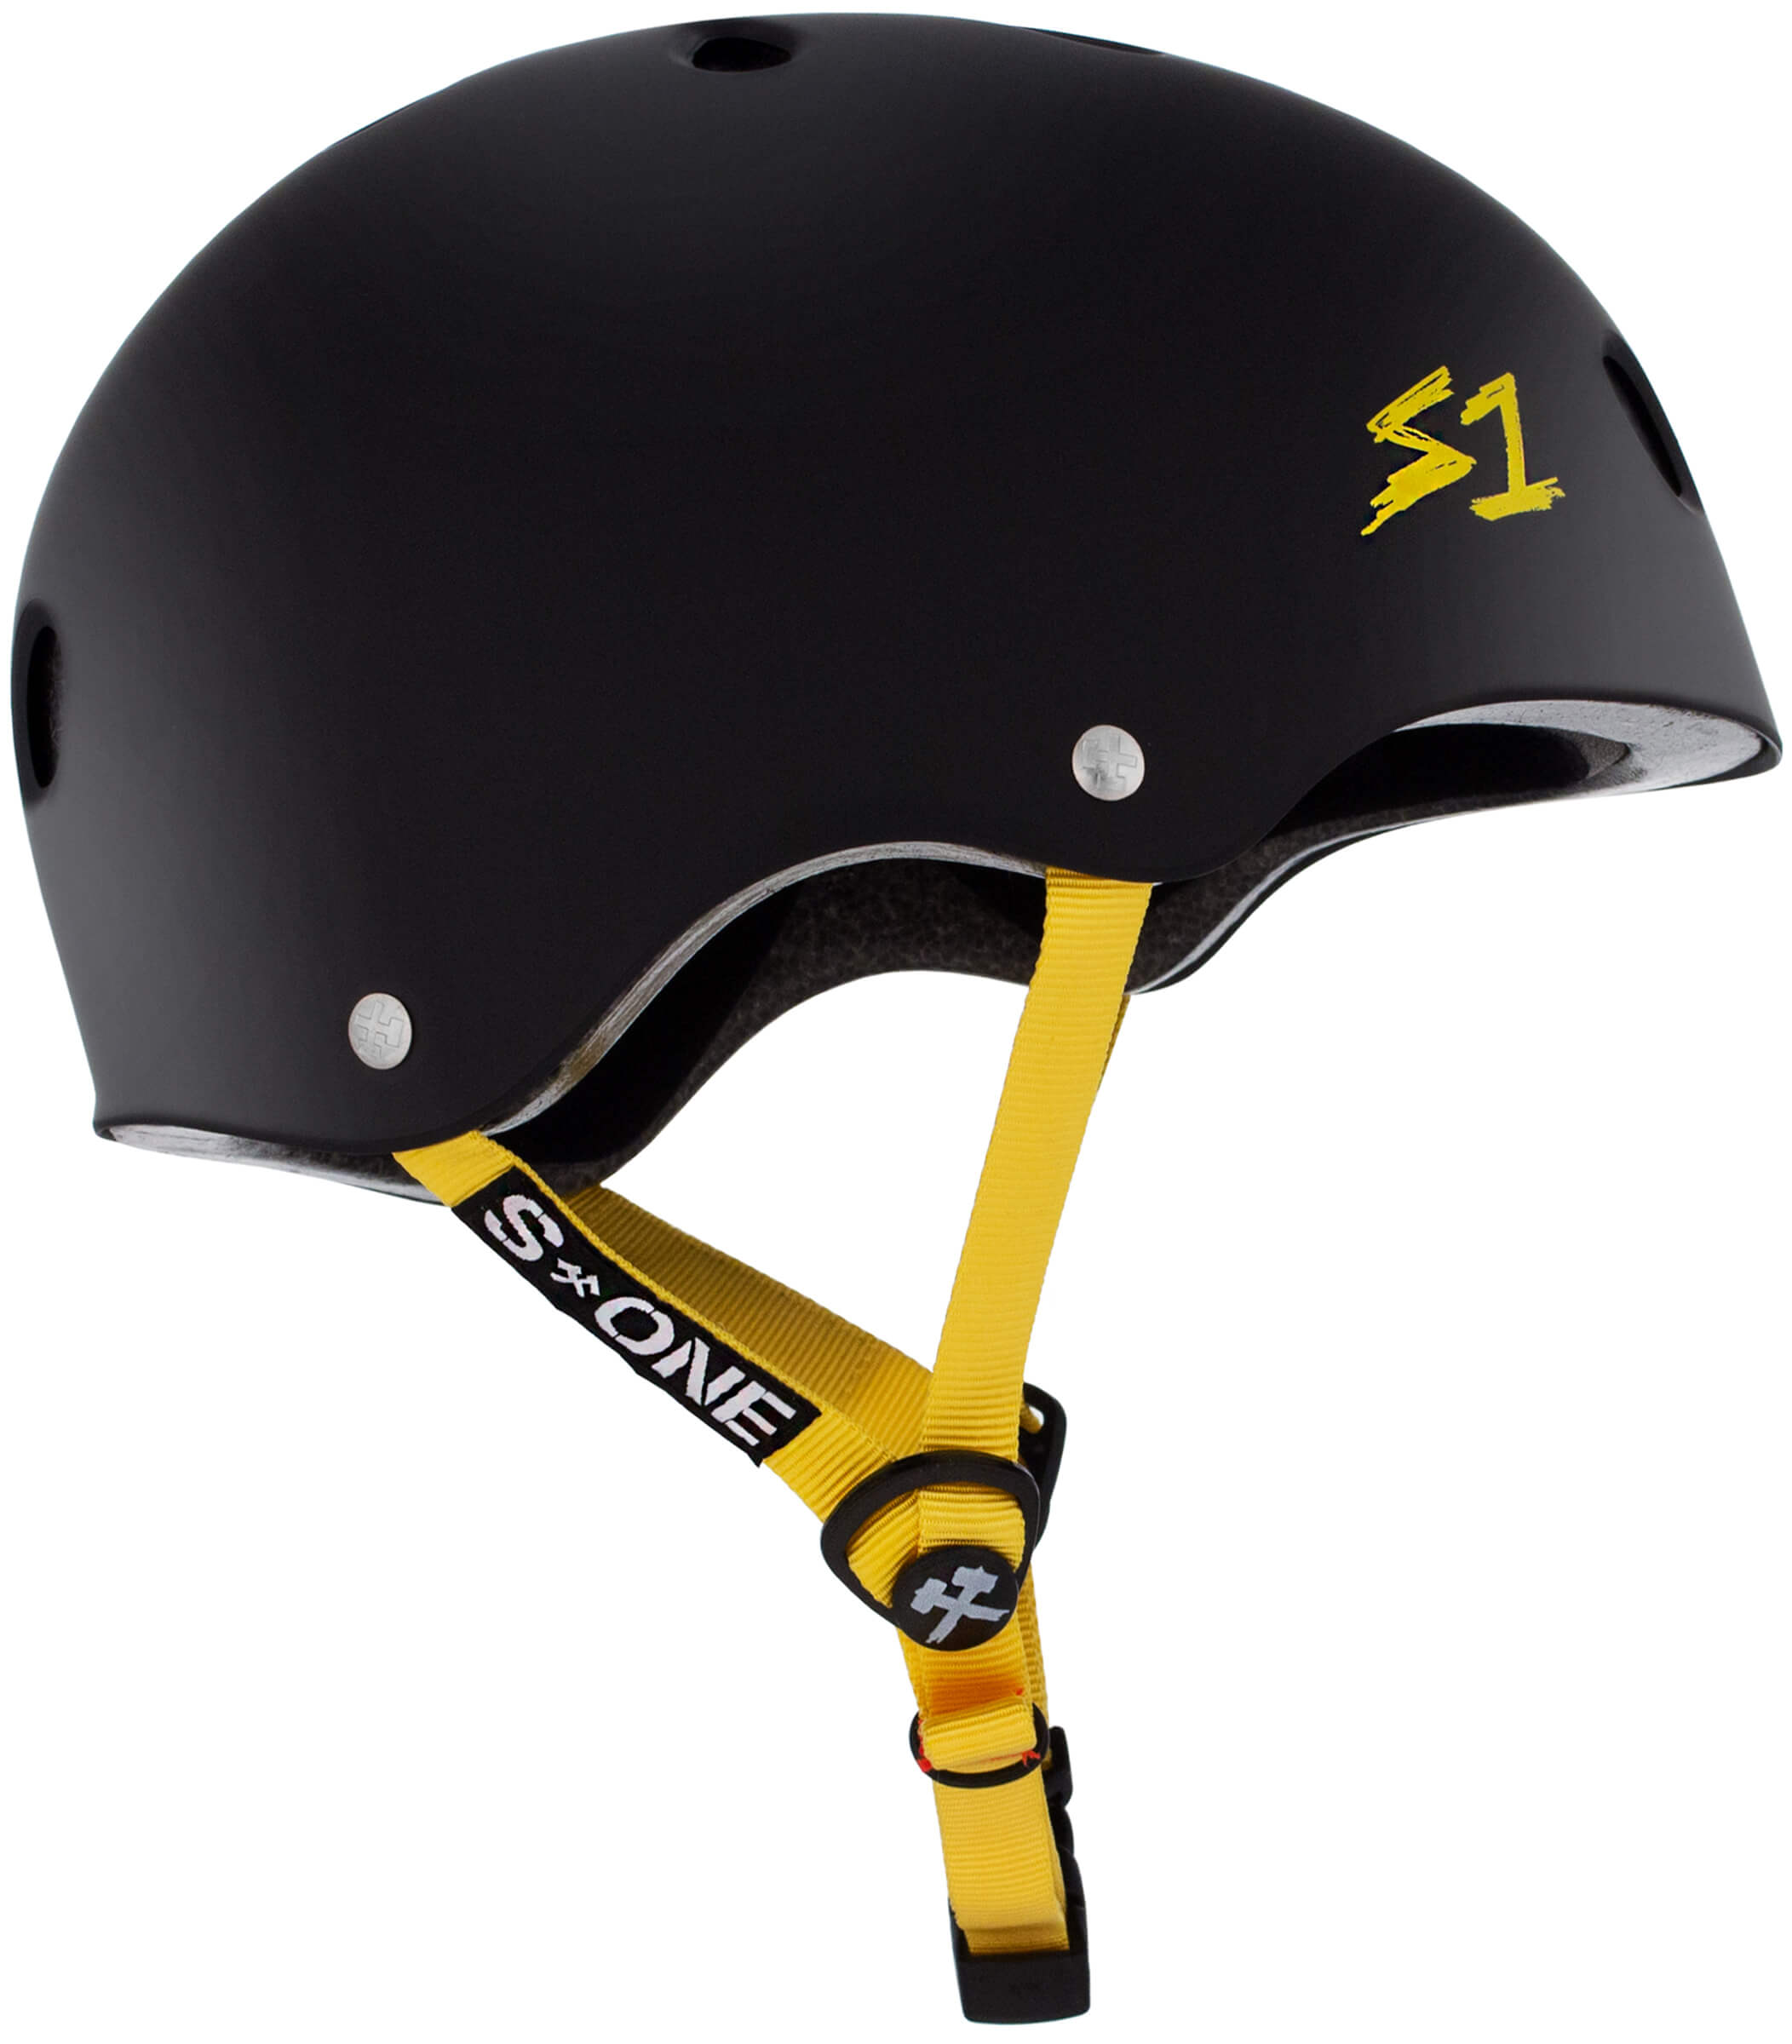 S1 Lifer Helmet - Casque noir mât avec sangles jaune